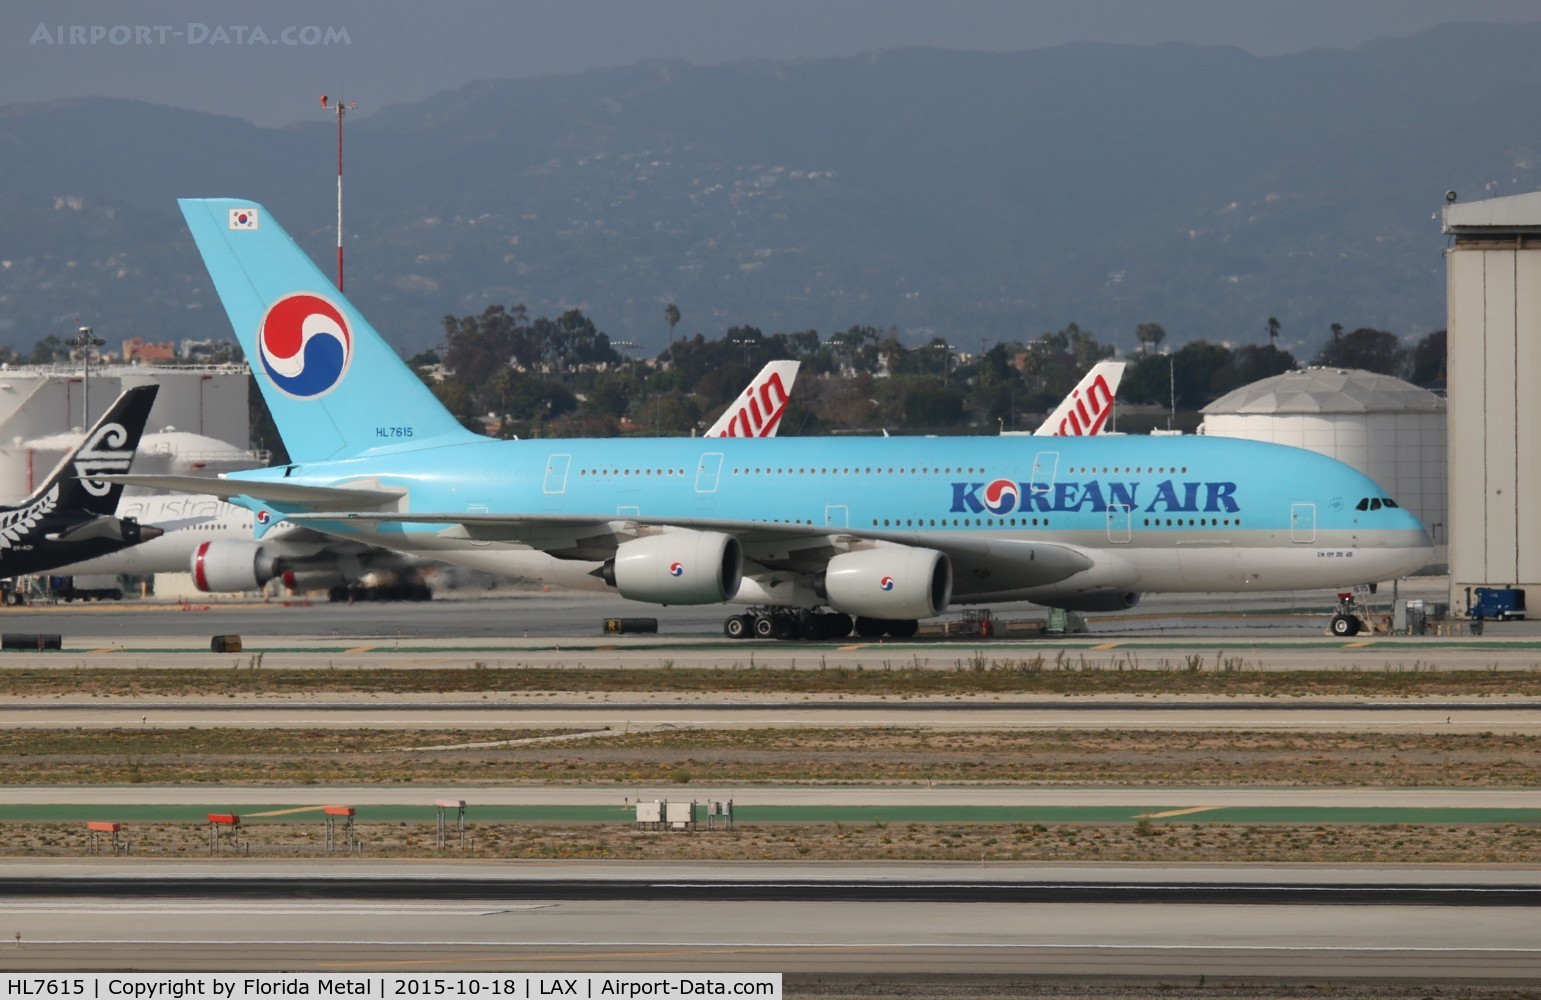 HL7615, 2011 Airbus A380-861 C/N 075, Korean